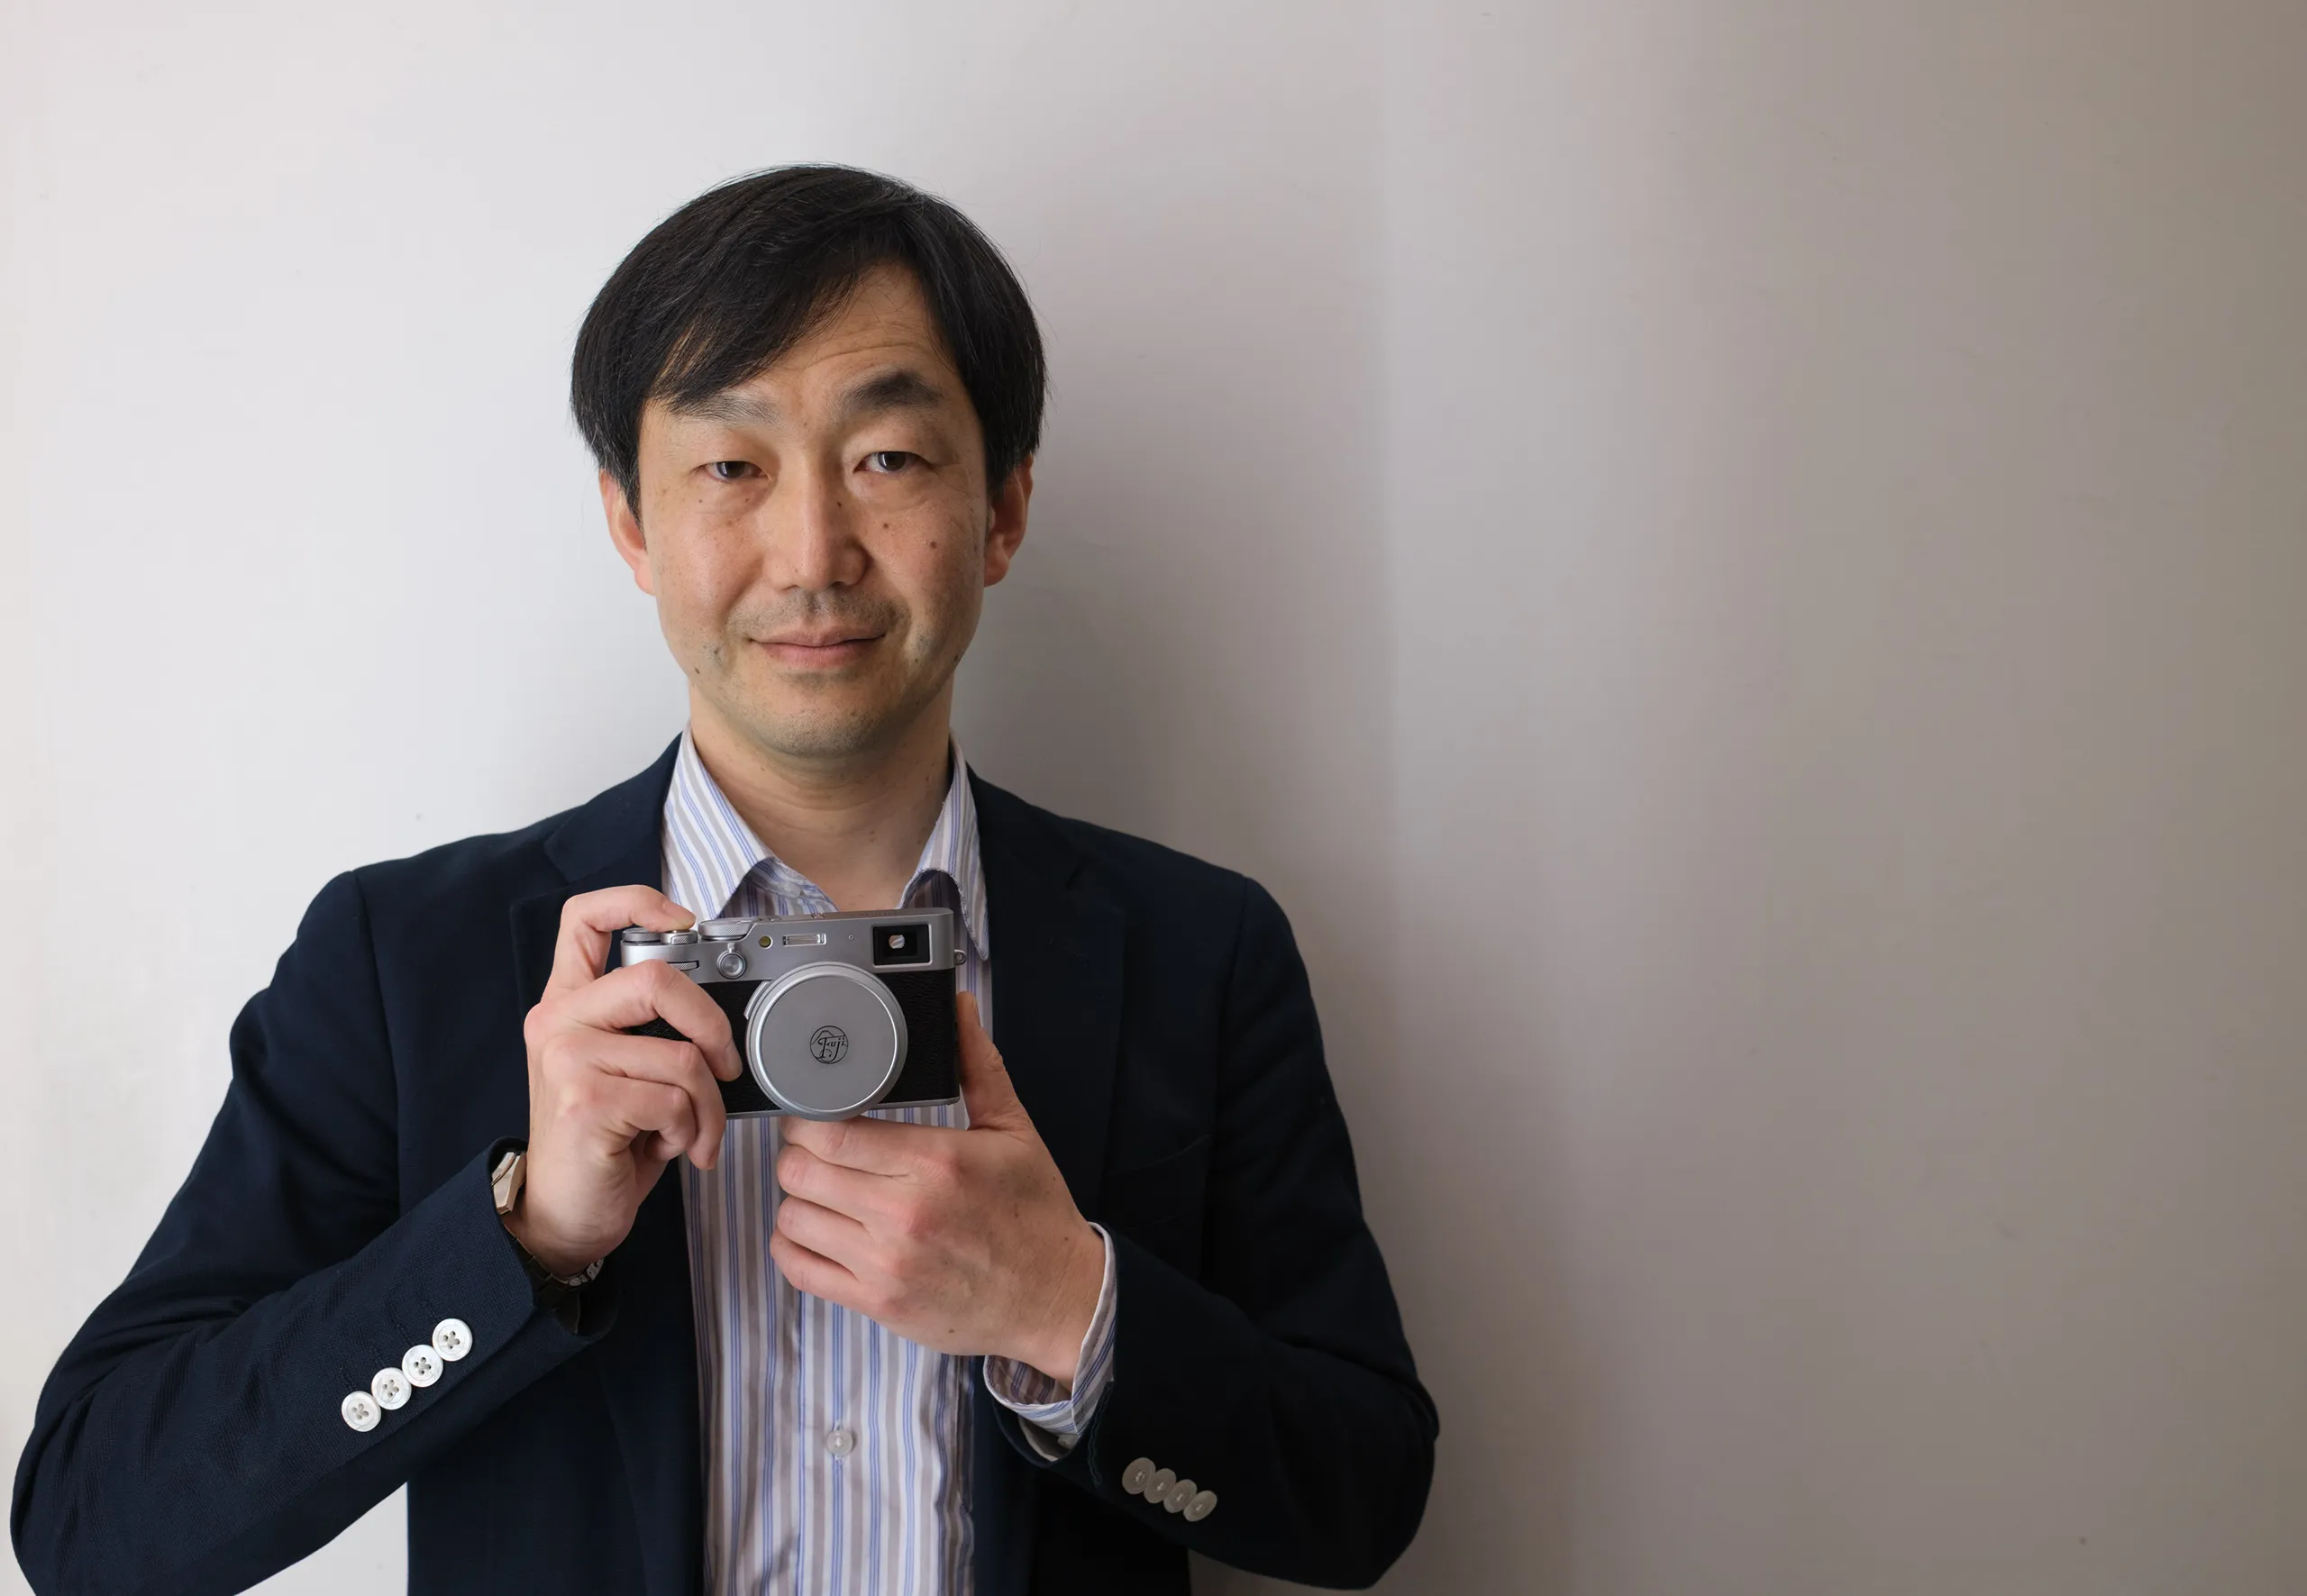 Đại diện Fujifilm chia sẻ: Fujifilm vẫn sẽ tiếp tục phát triển dòng máy ảnh X-Pro trong tương lai